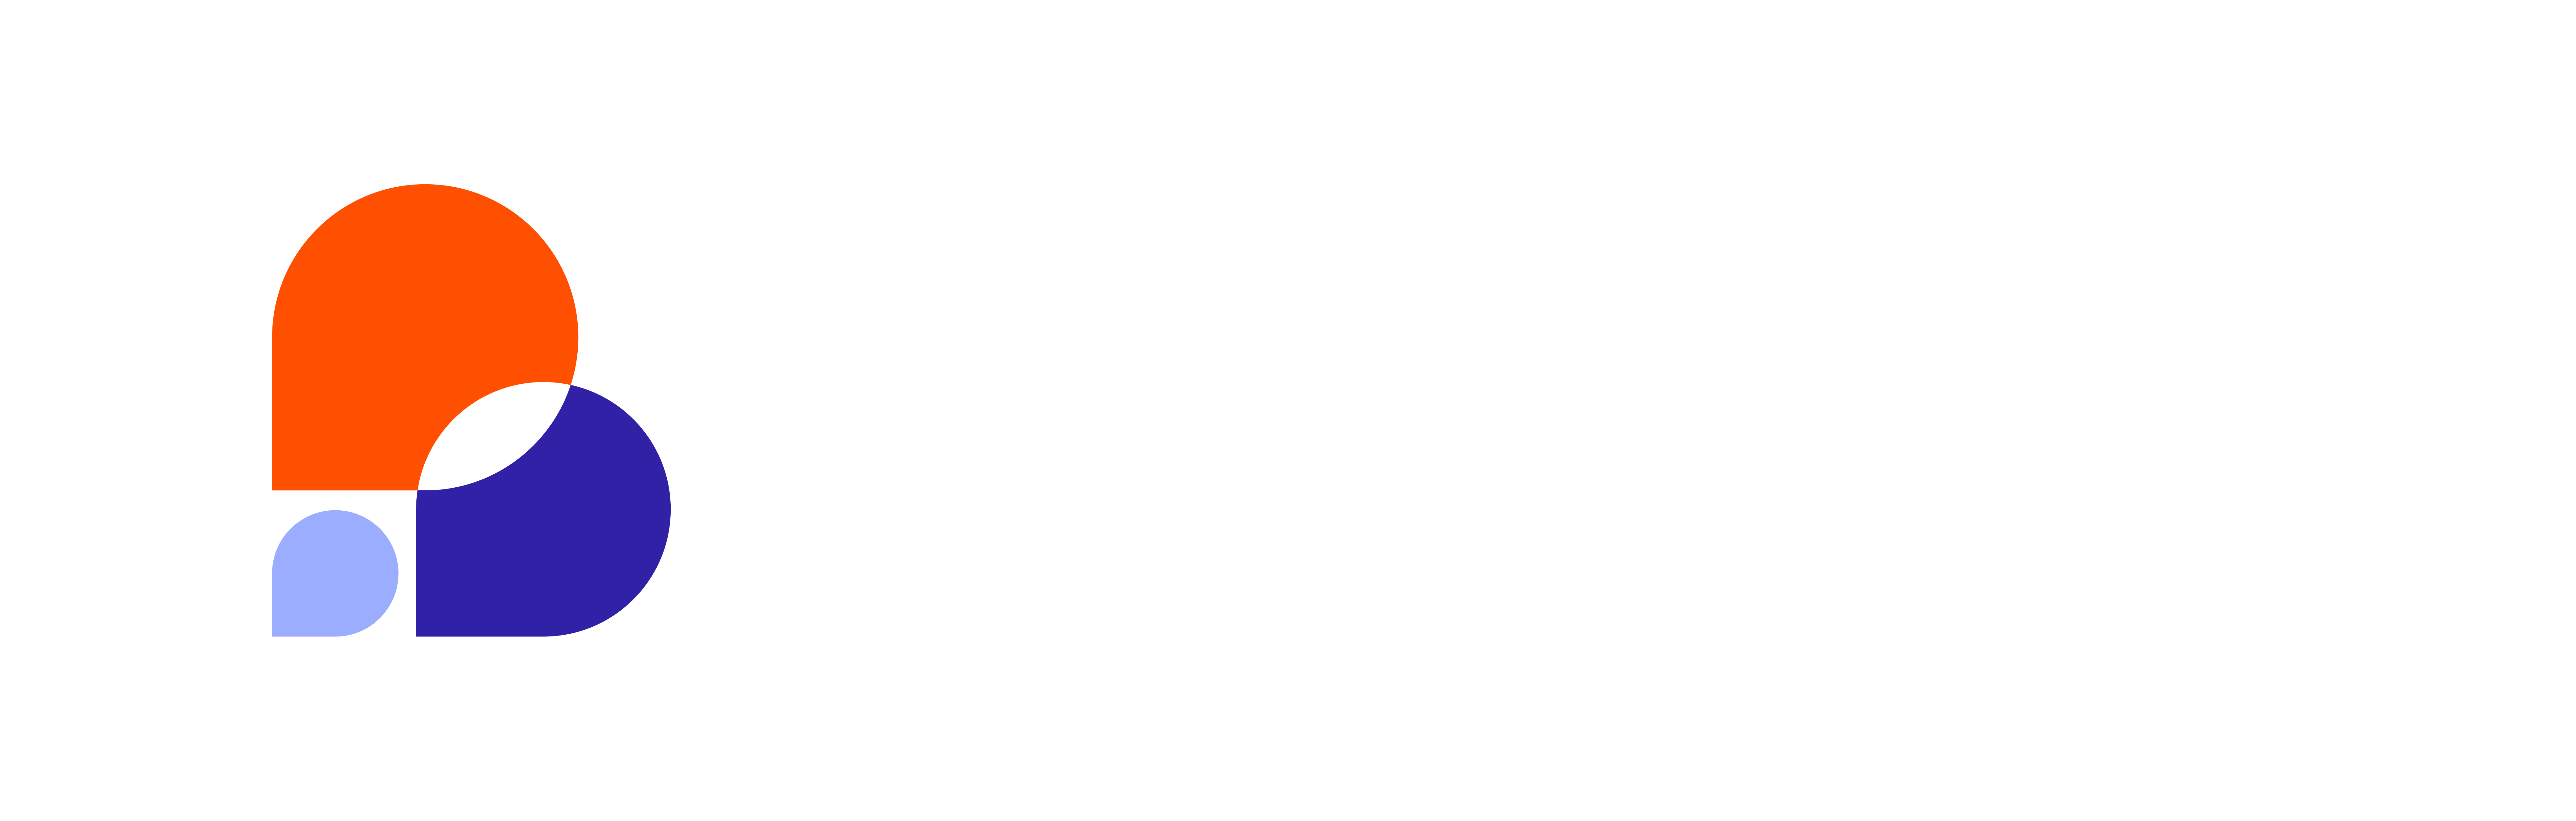 Brightfind_Inverse_Logo